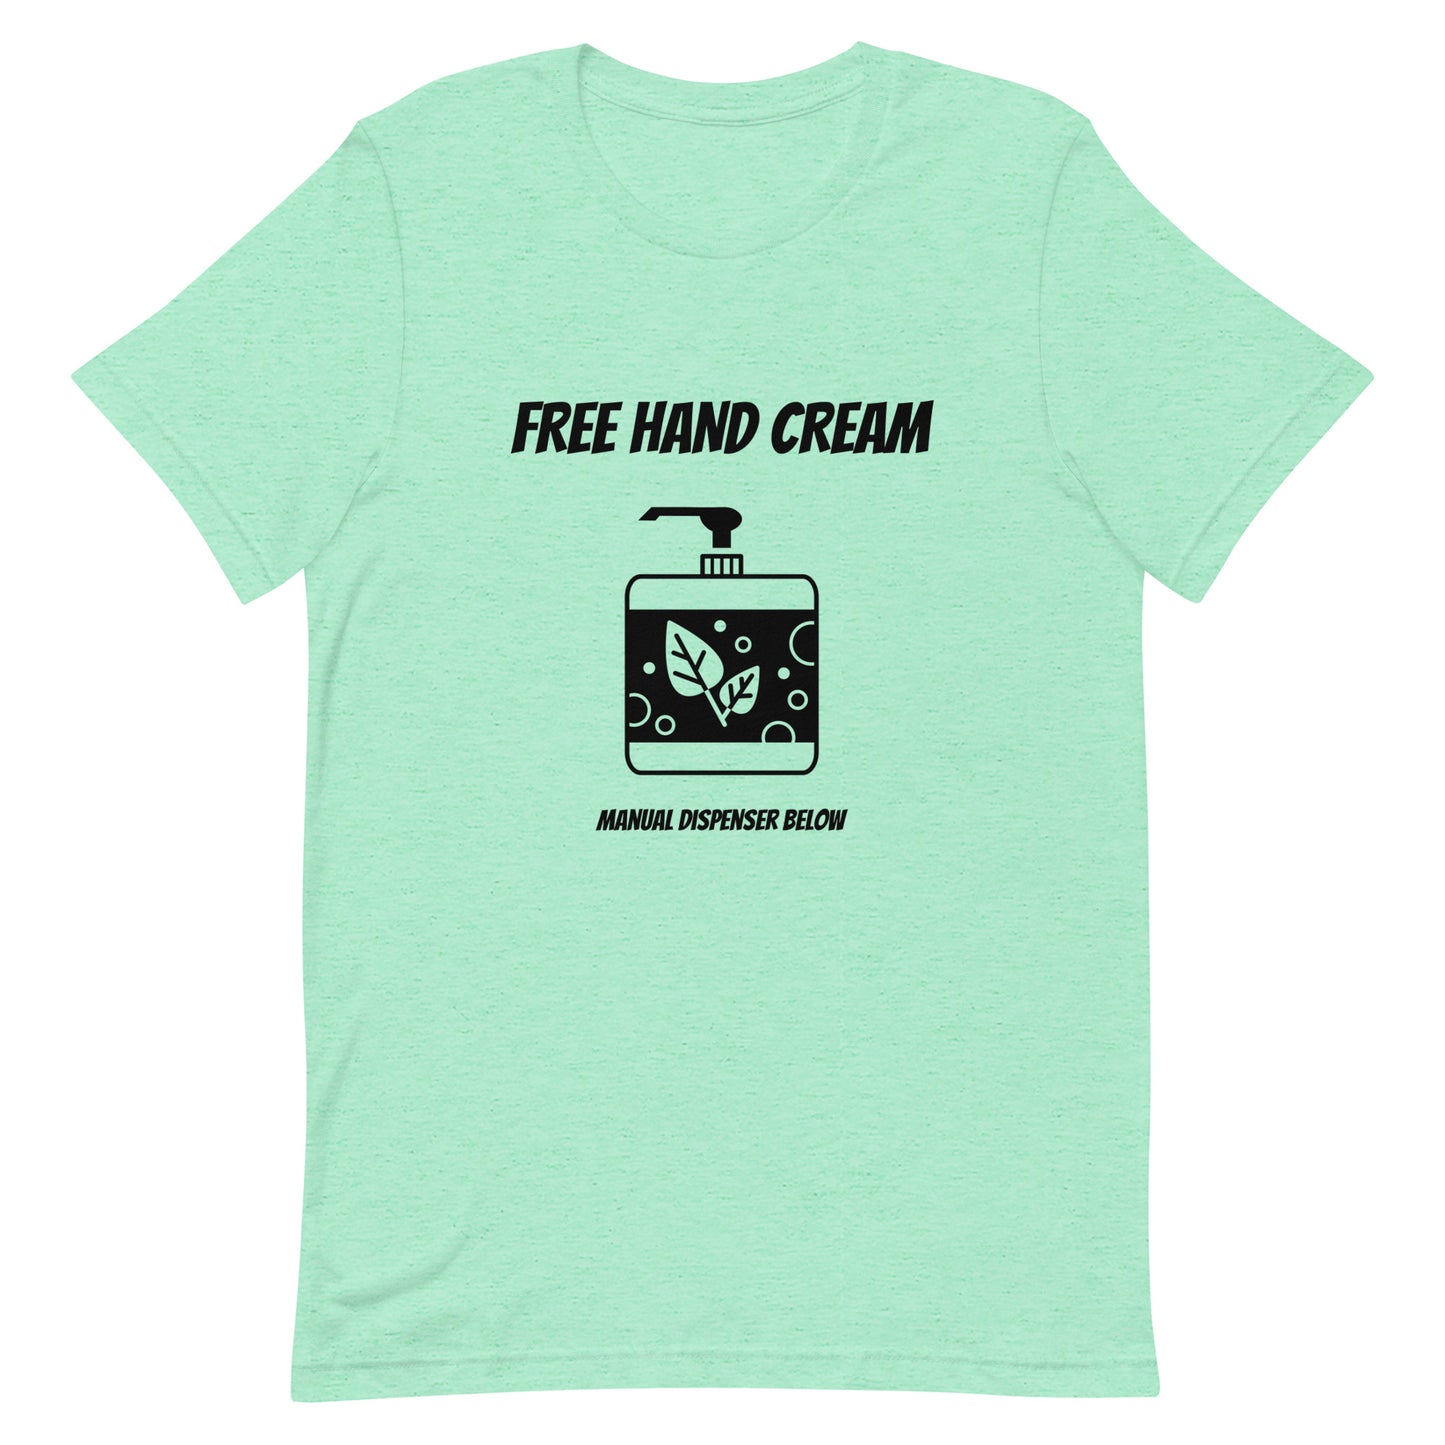 Free hand cream